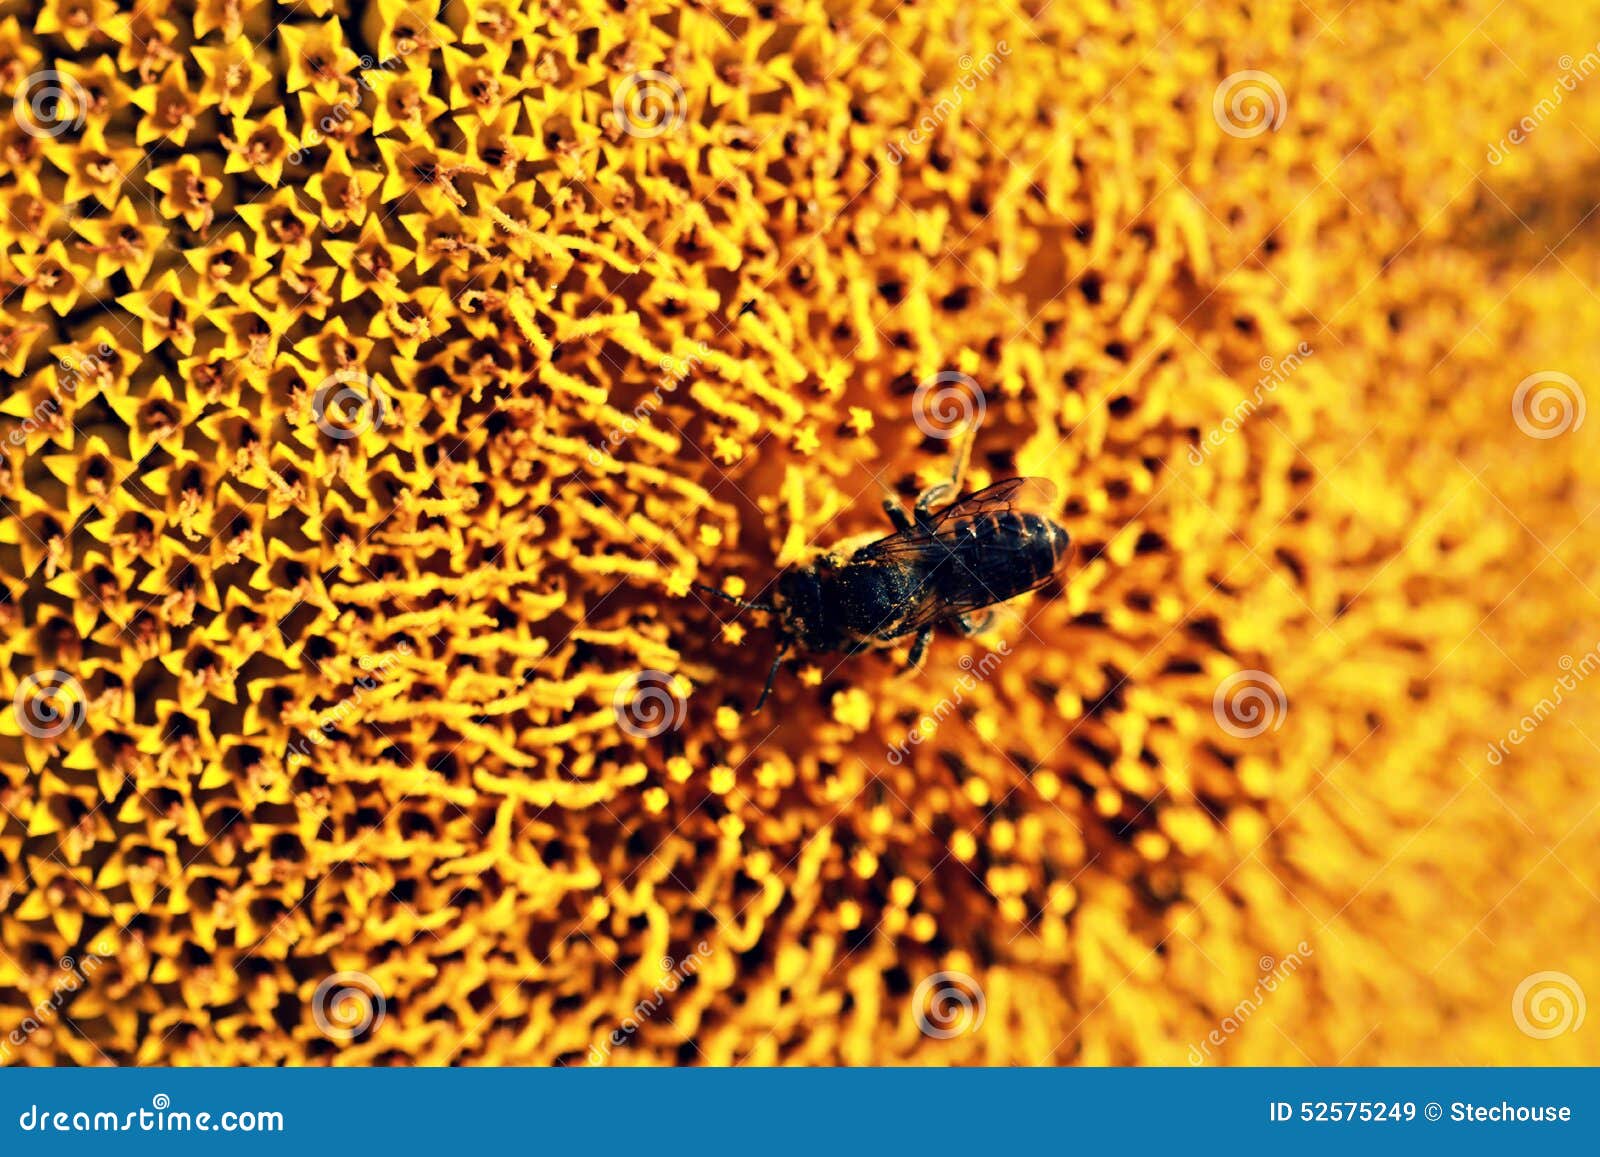 Abeja y girasol amarillo brillante. Un girasol amarillo brillante toma el sol en el sol ucraniano caliente Una abeja se sienta encima del girasol, que es un símbolo de Ucrania Es verano